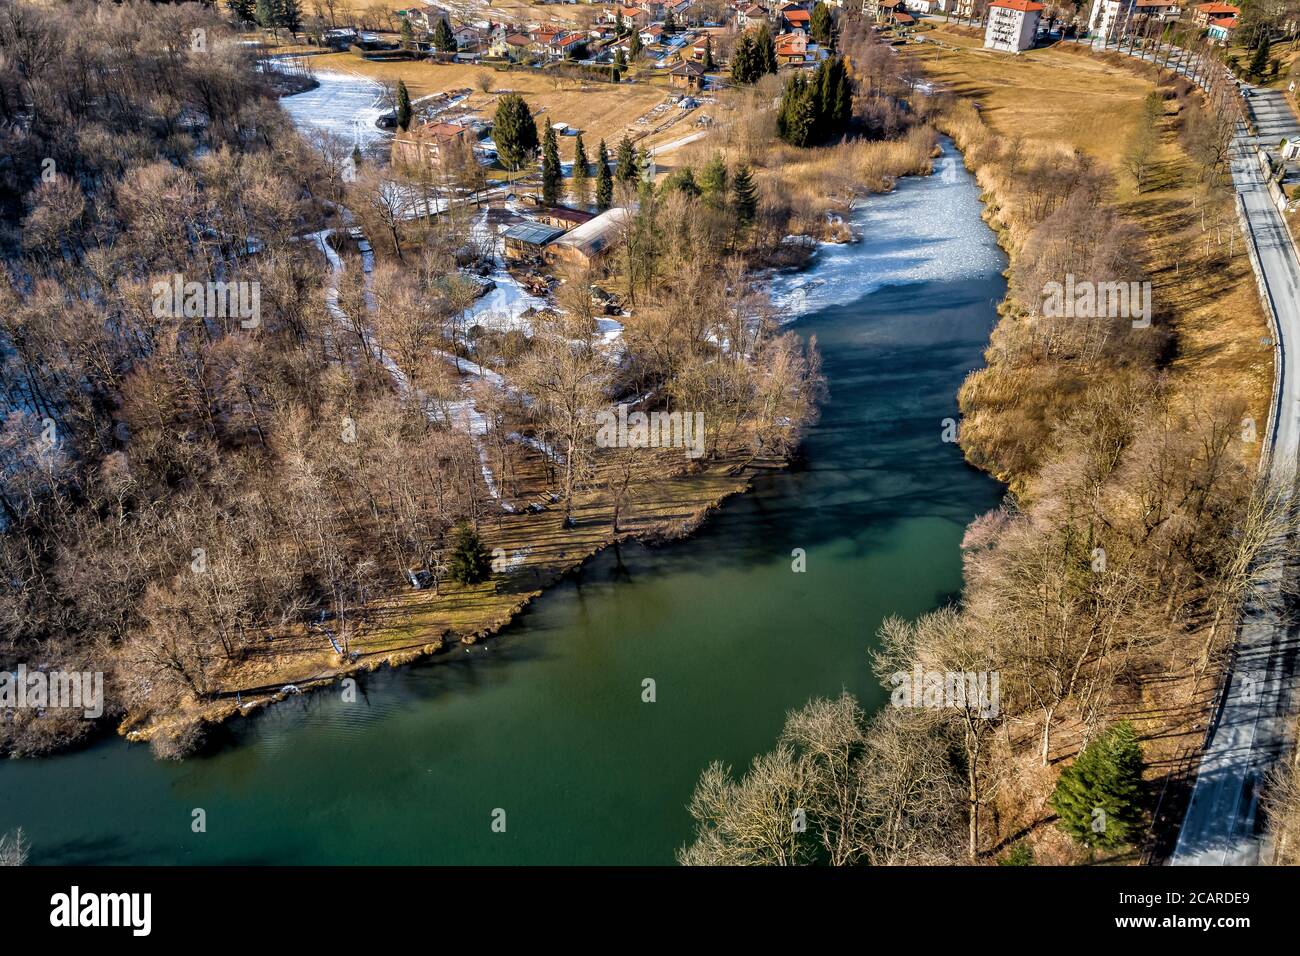 Vue aérienne du petit village et du lac de Brinzio sur valey Rasa en hiver, province de Varèse, Italie. Banque D'Images